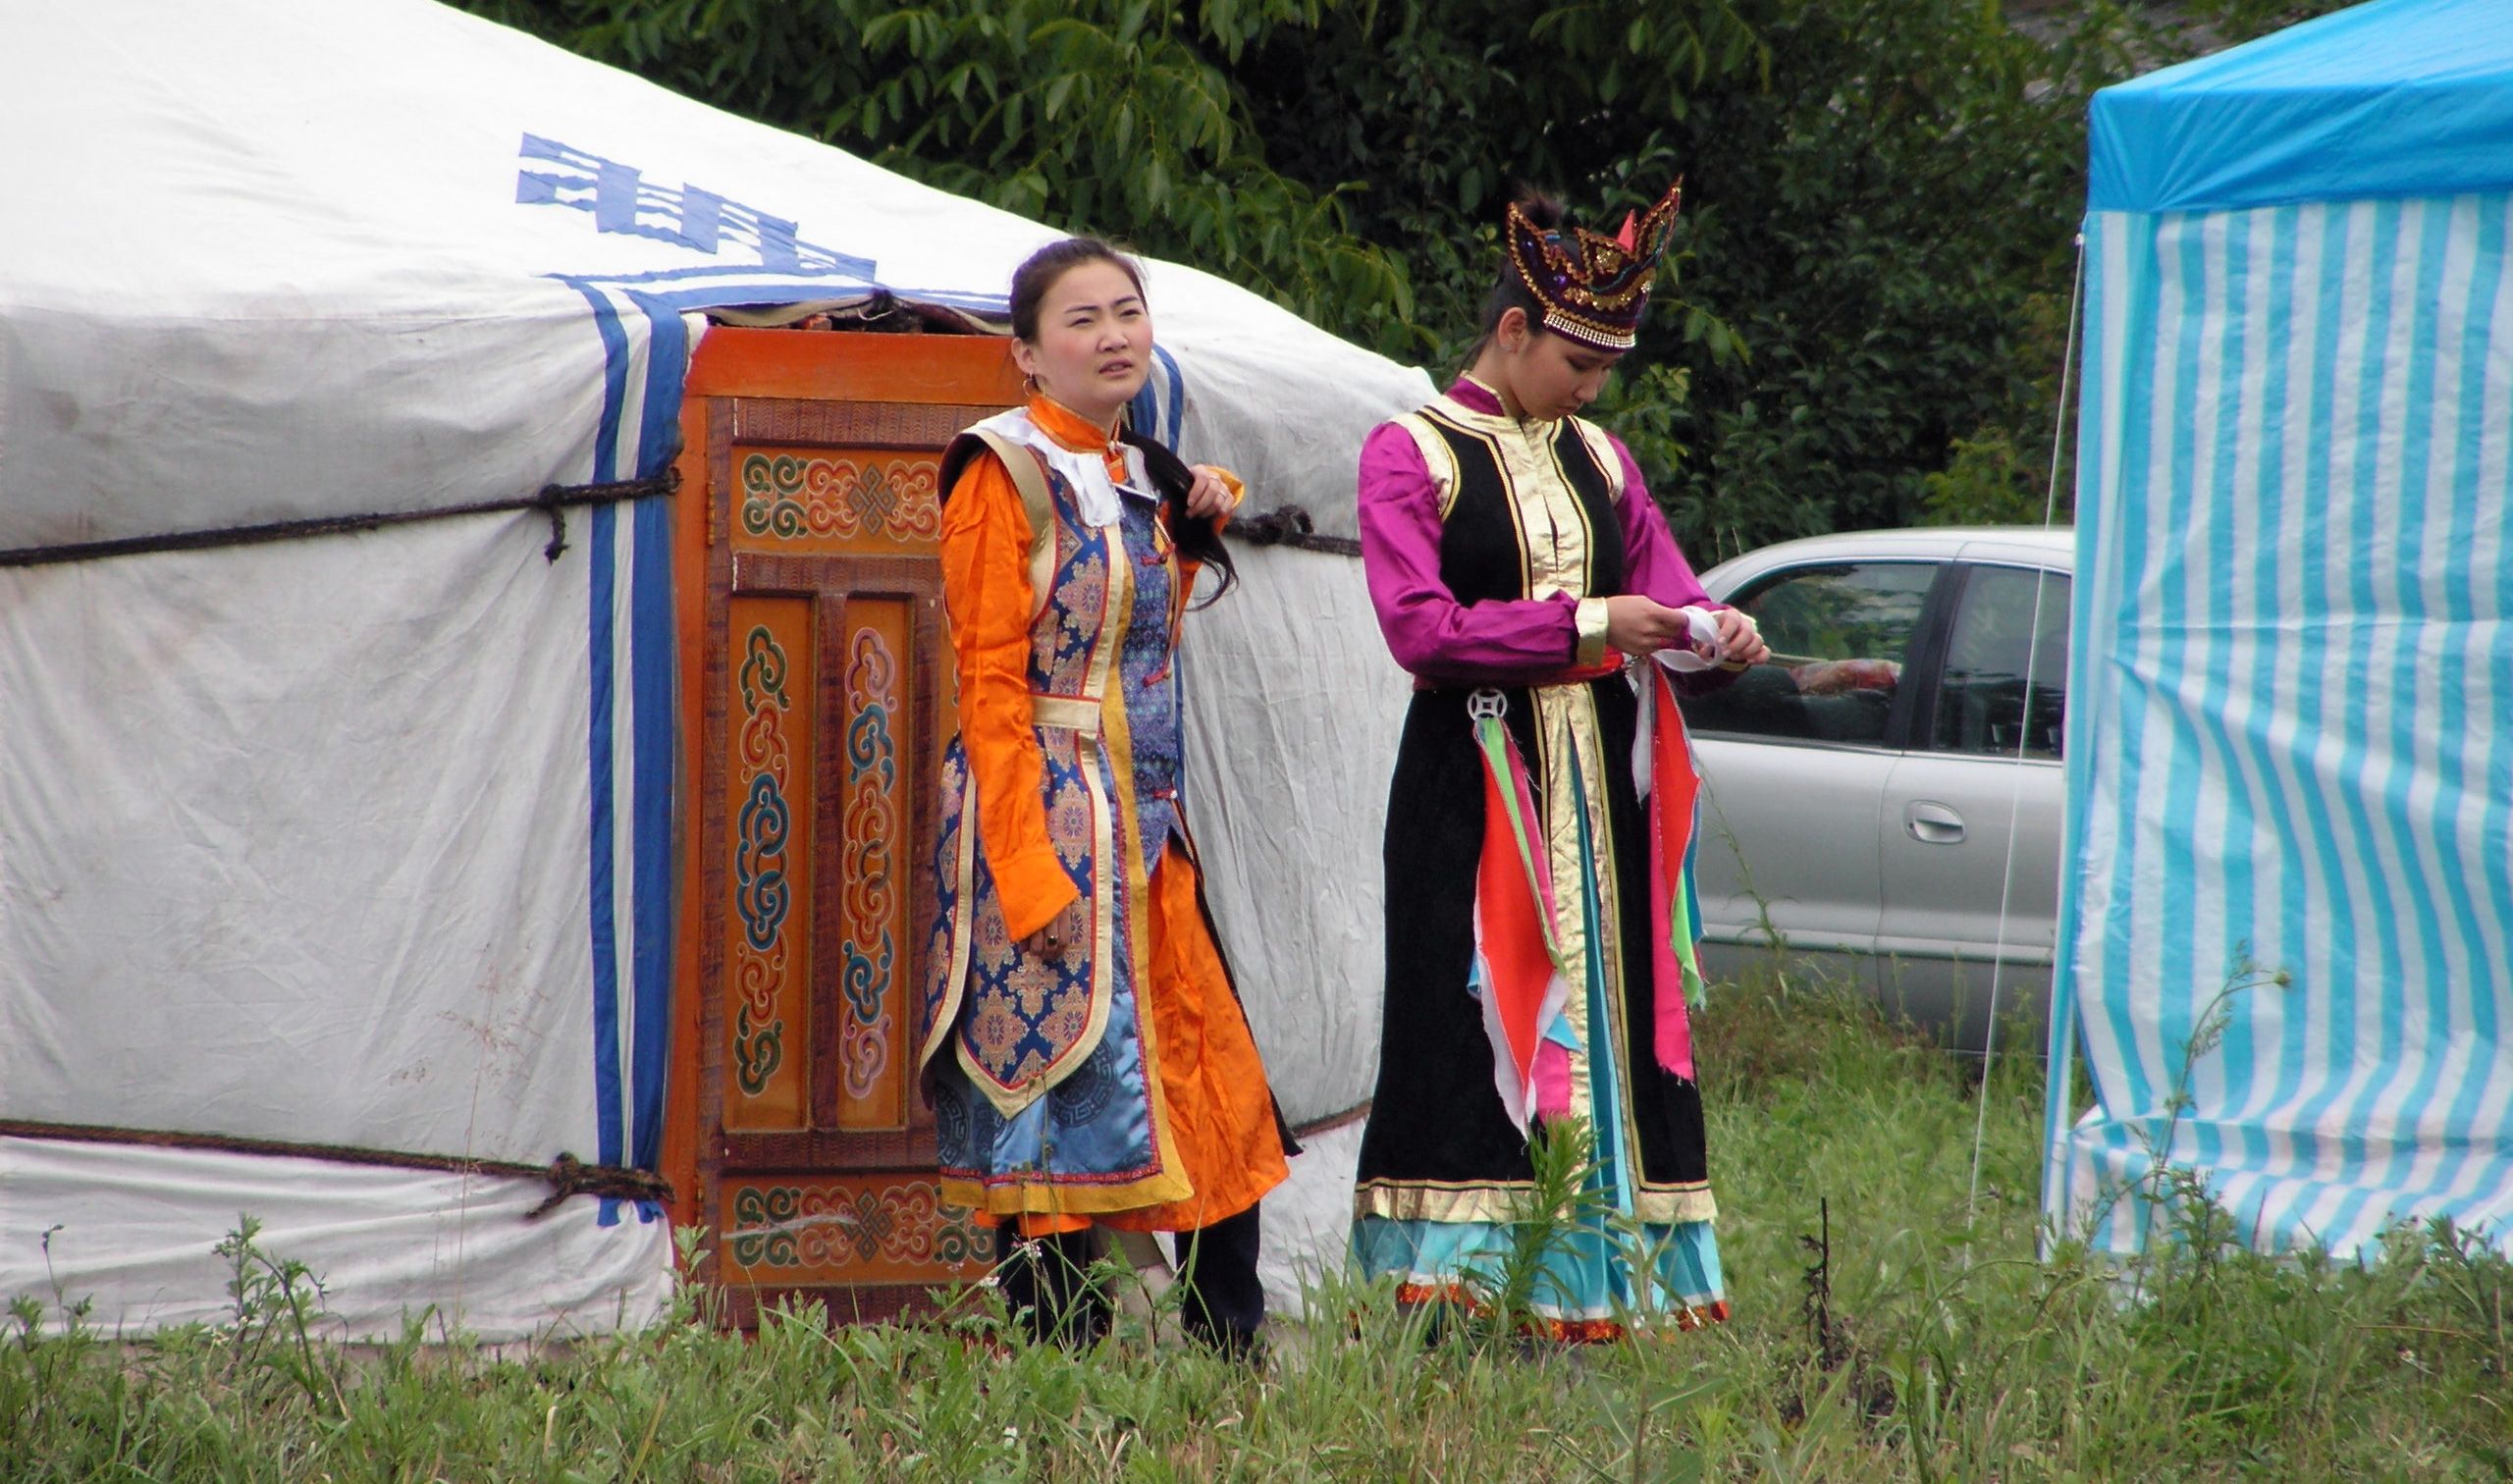 モンゴルの女性 無料のストックフォト Libreshot